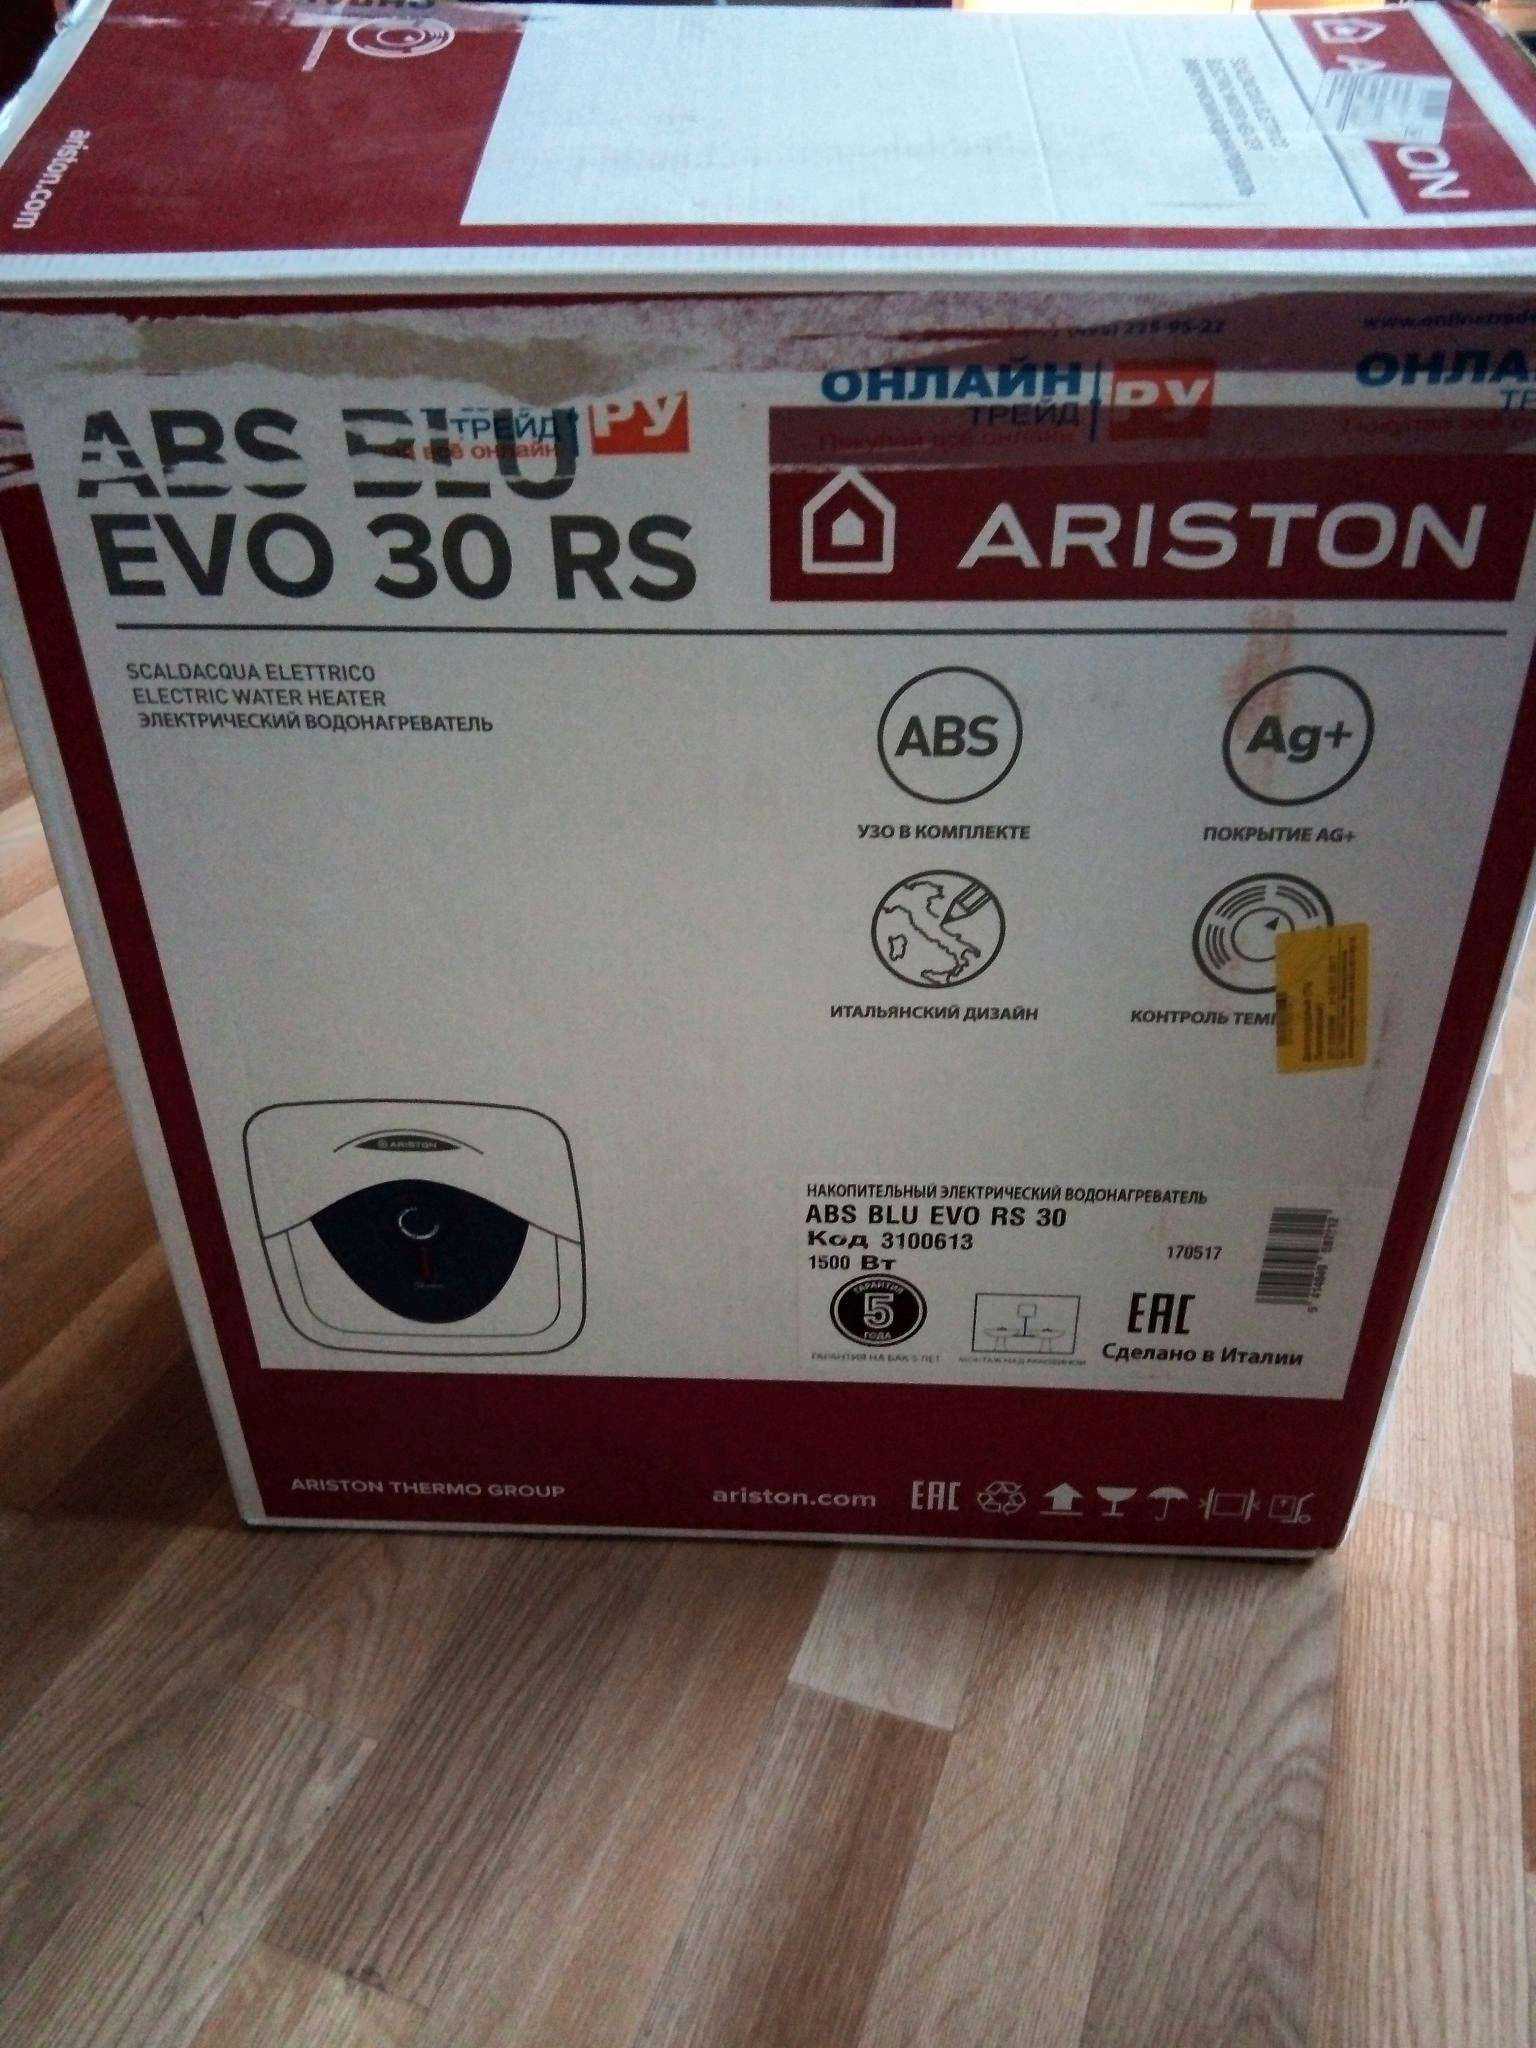 Ariston ABS BLU EVO RS 30 - короткий, но максимально информативный обзор. Для большего удобства, добавлены характеристики, отзывы и видео.